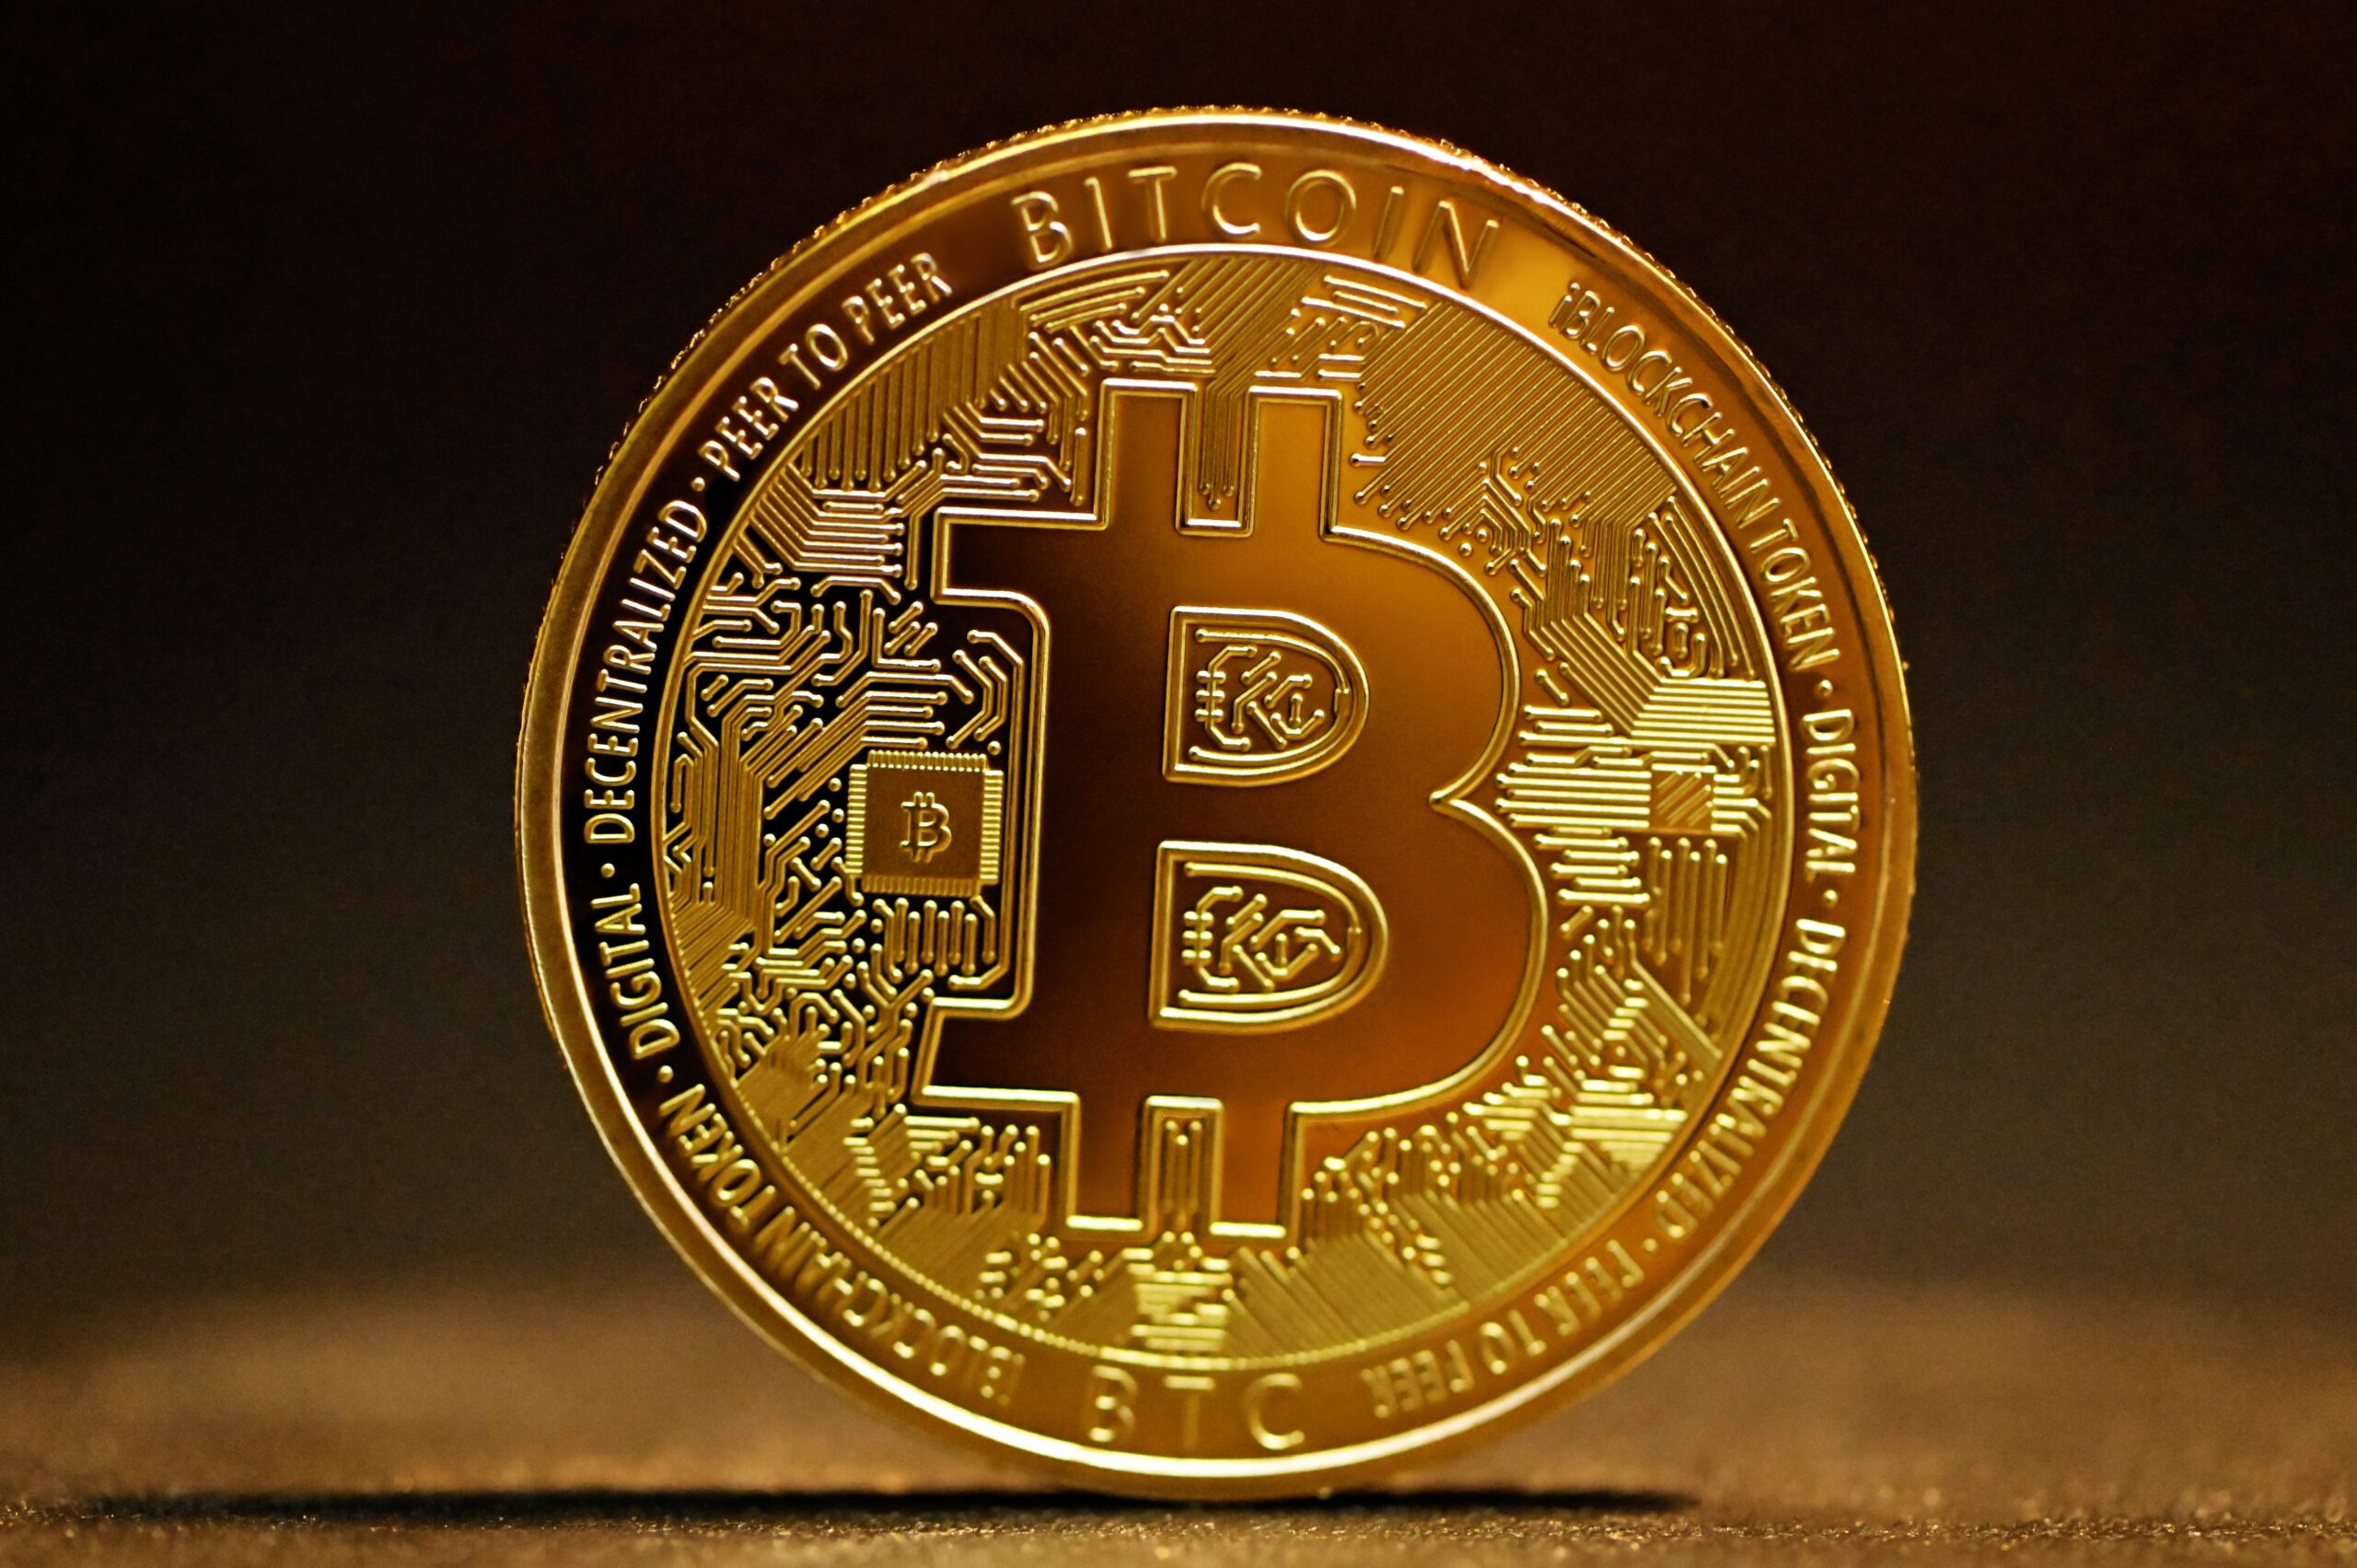 Acheter du Bitcoin tout savoir avant de se lancer